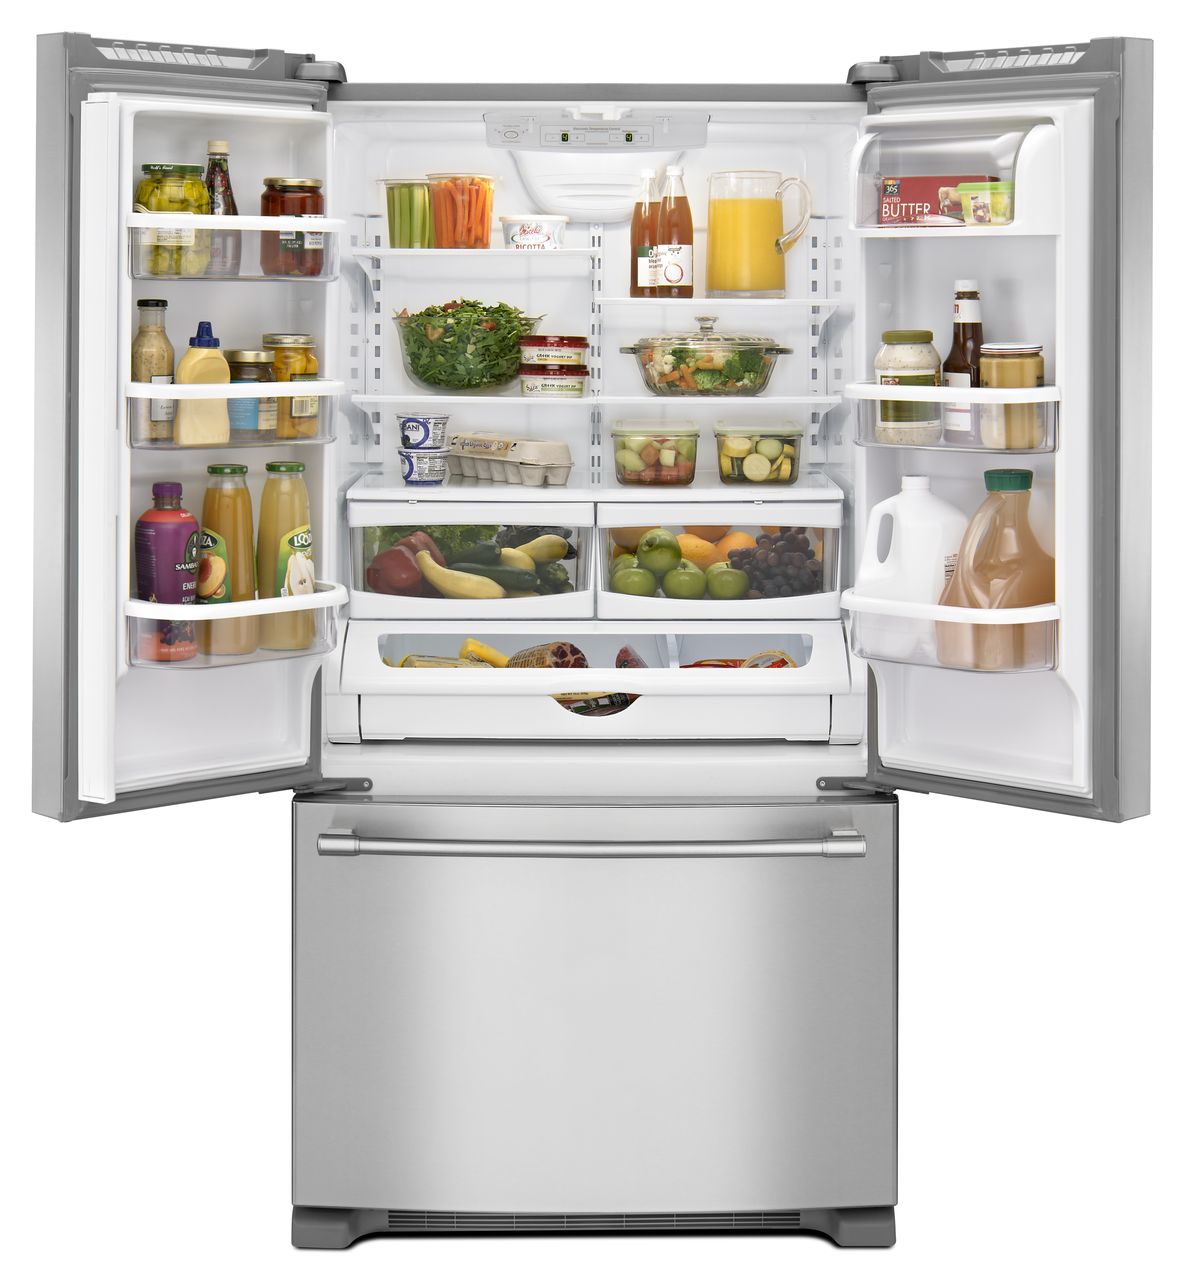 Двухкамерный холодильник морозильник. Холодильник maytag 5gfb2558ea. Майтаг холодильник. Холодильник maytag GS 2625 gek s. Холодильник maytag 5gfc20prya.